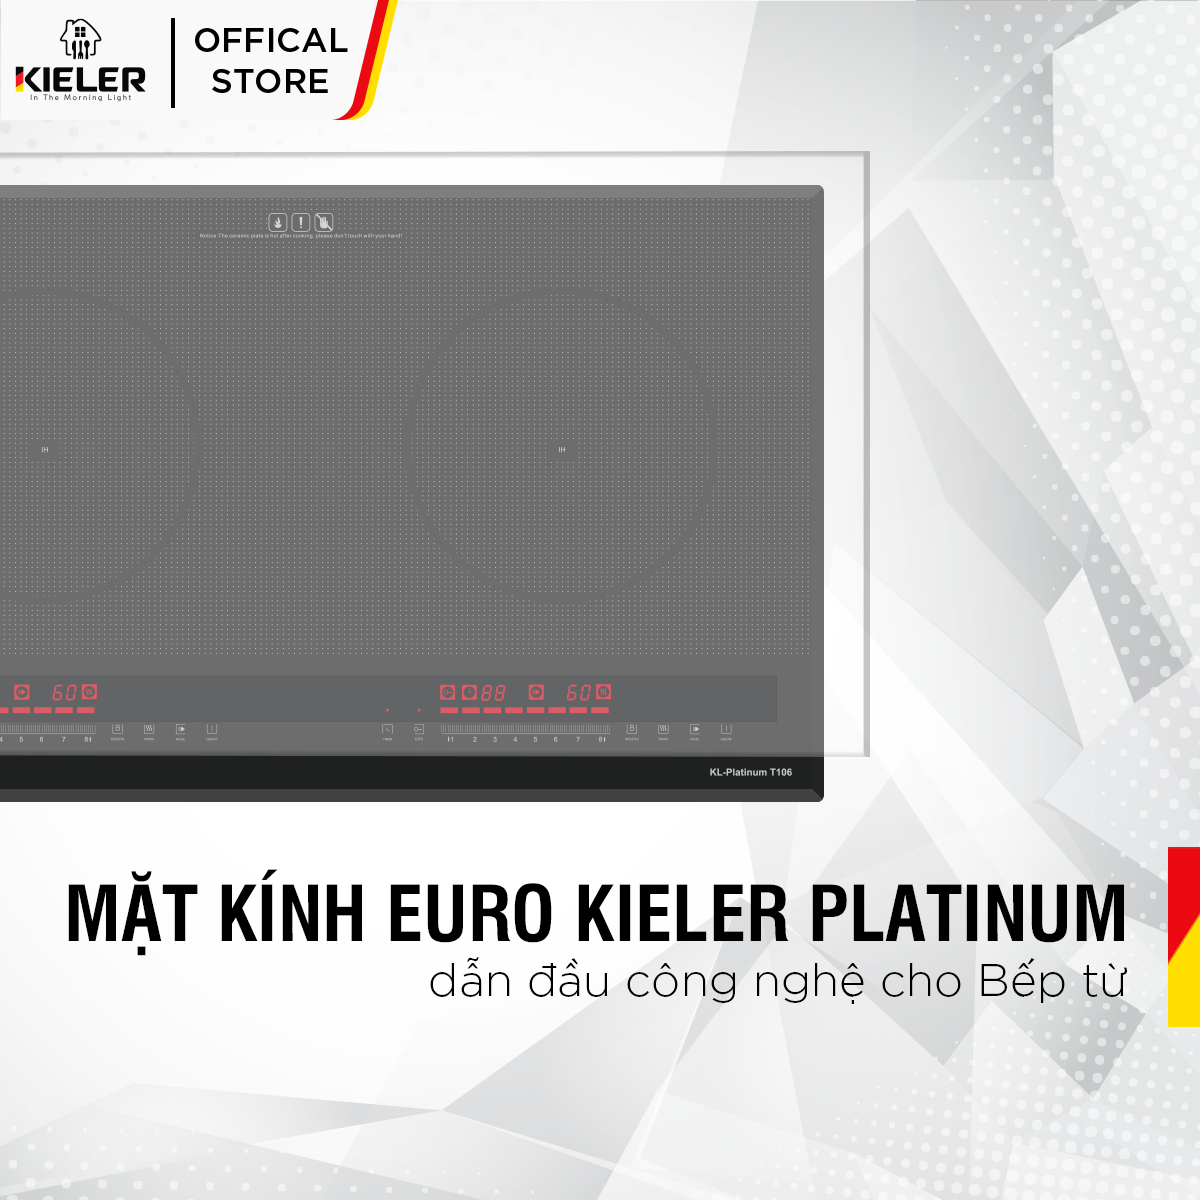 Bếp điện từ đôi Kieler KL-PLATINUM T106 mặt kính Euro Kieler Platinum, Bếp điện từ có hẹn giờ, cảm ứng chống tràn 4400W - Hàng Chính Hãng